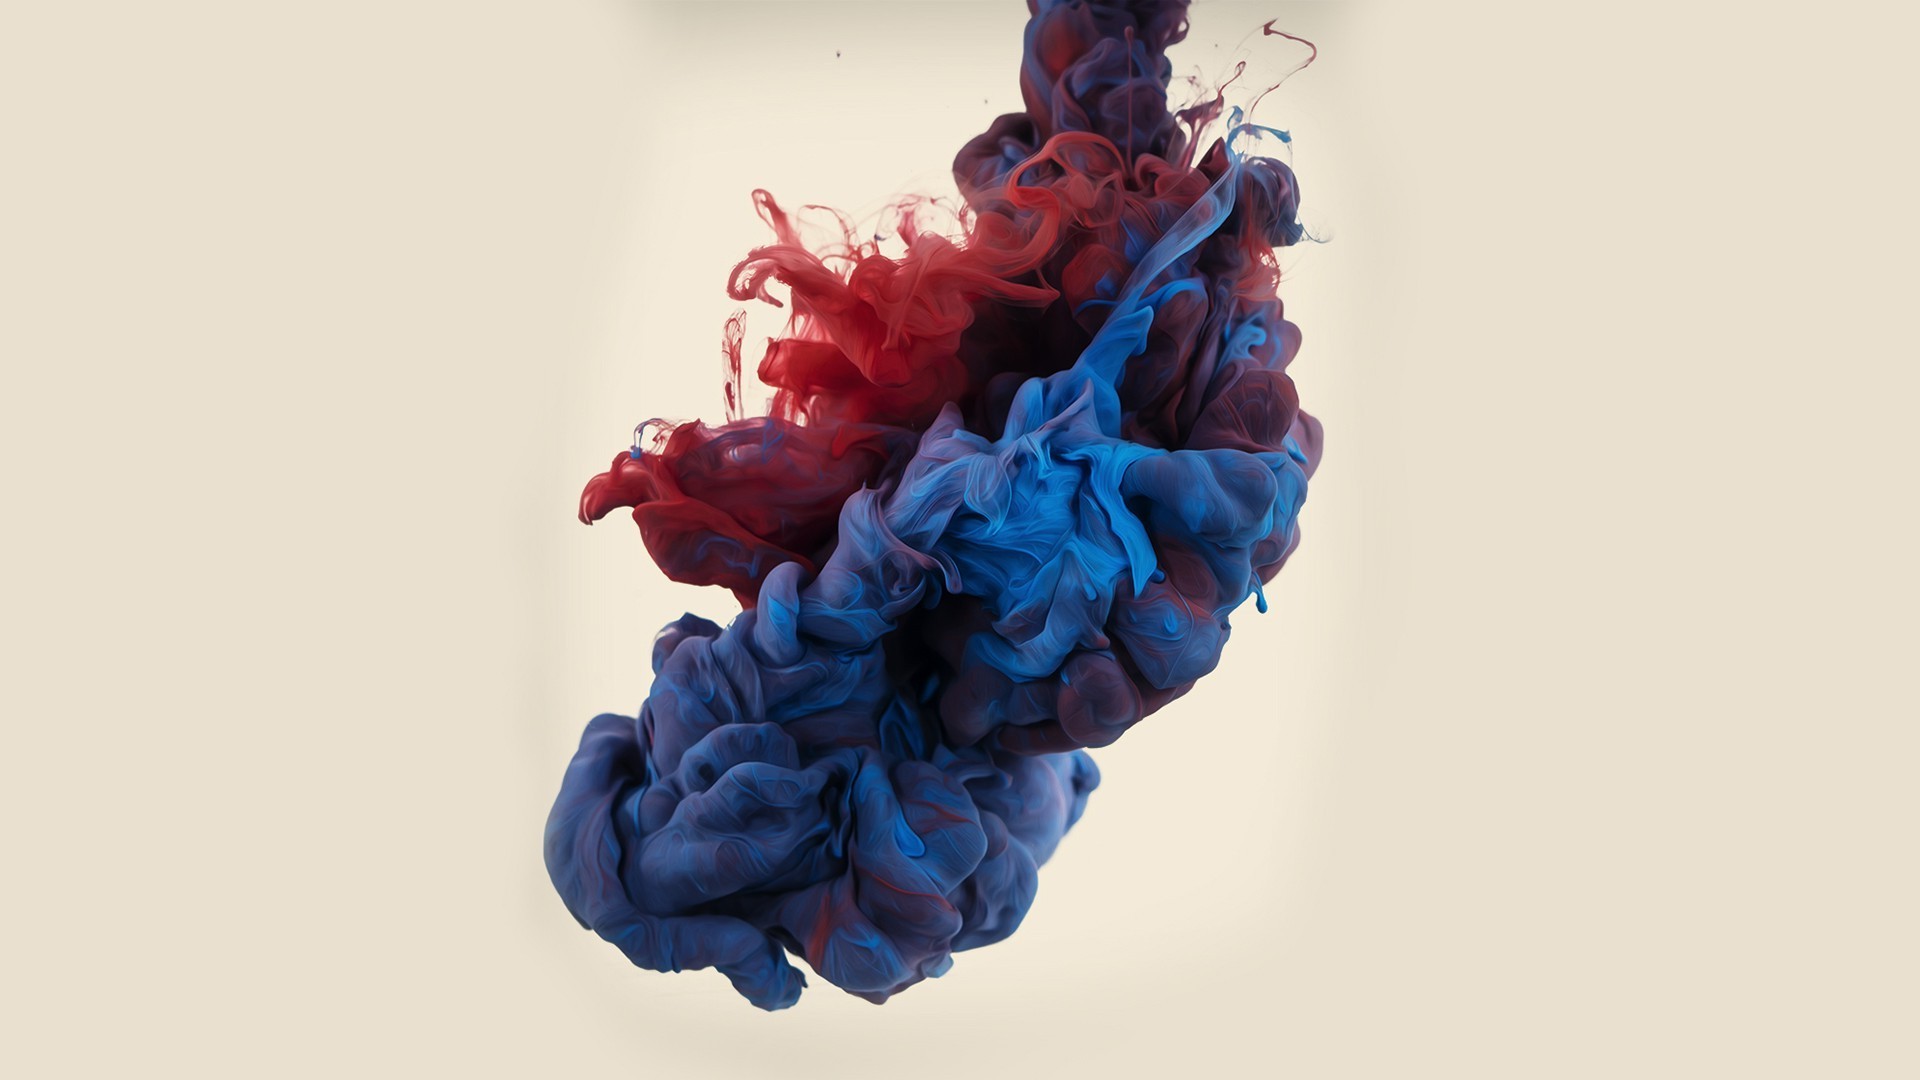 inchiostro live wallpaper,blu,rosso,lana,blu cobalto,tessile